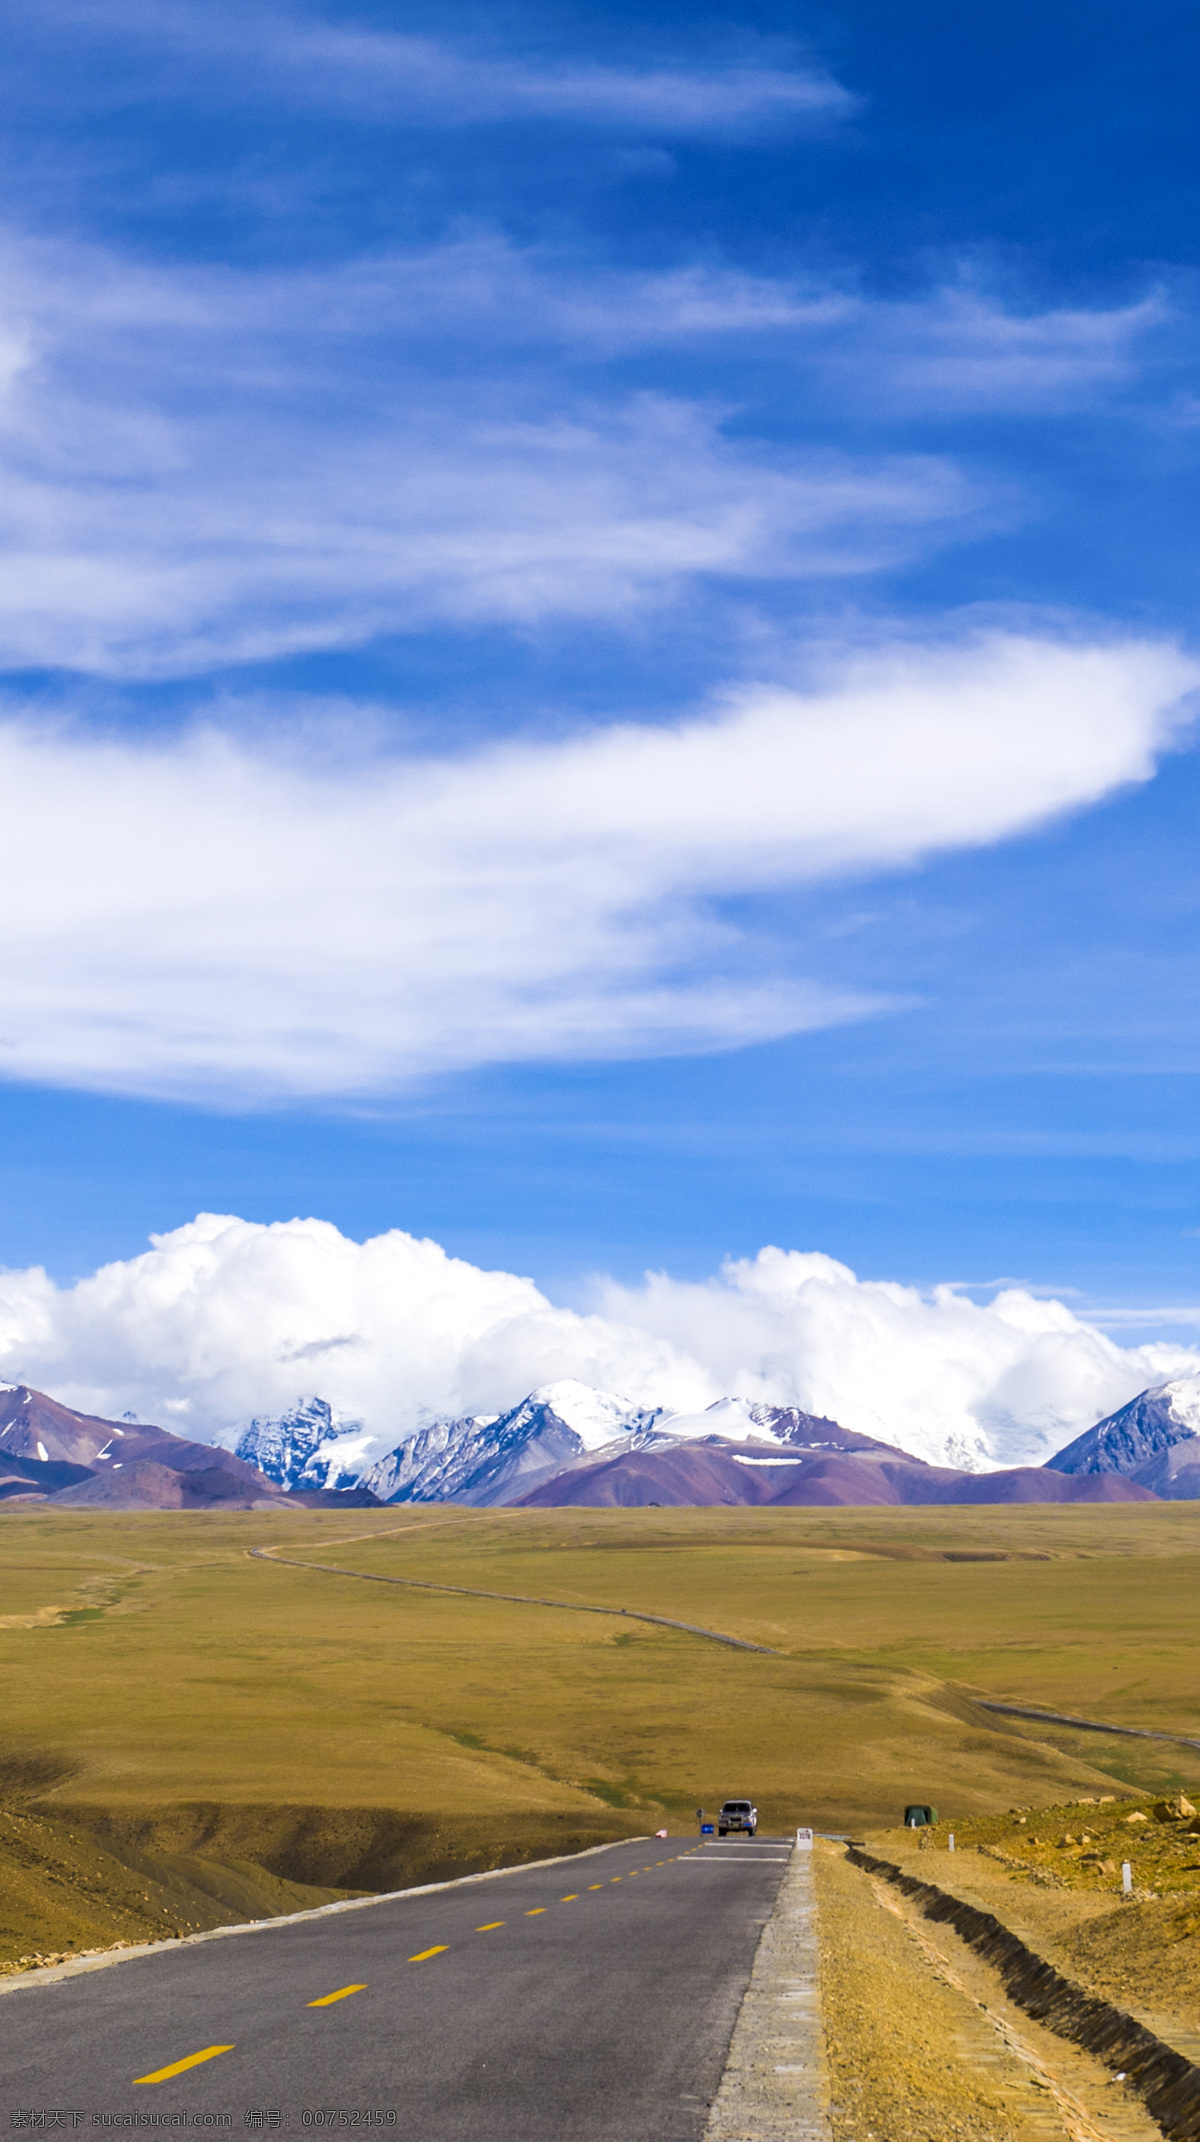 西藏日喀则 西藏 日喀则 青藏高原 公路 青藏 高原 雪山 蓝天白云 蓝天 白云 云朵 天空 越野车 高山 山峰 山 崇山峻岭 旅游摄影 国内旅游